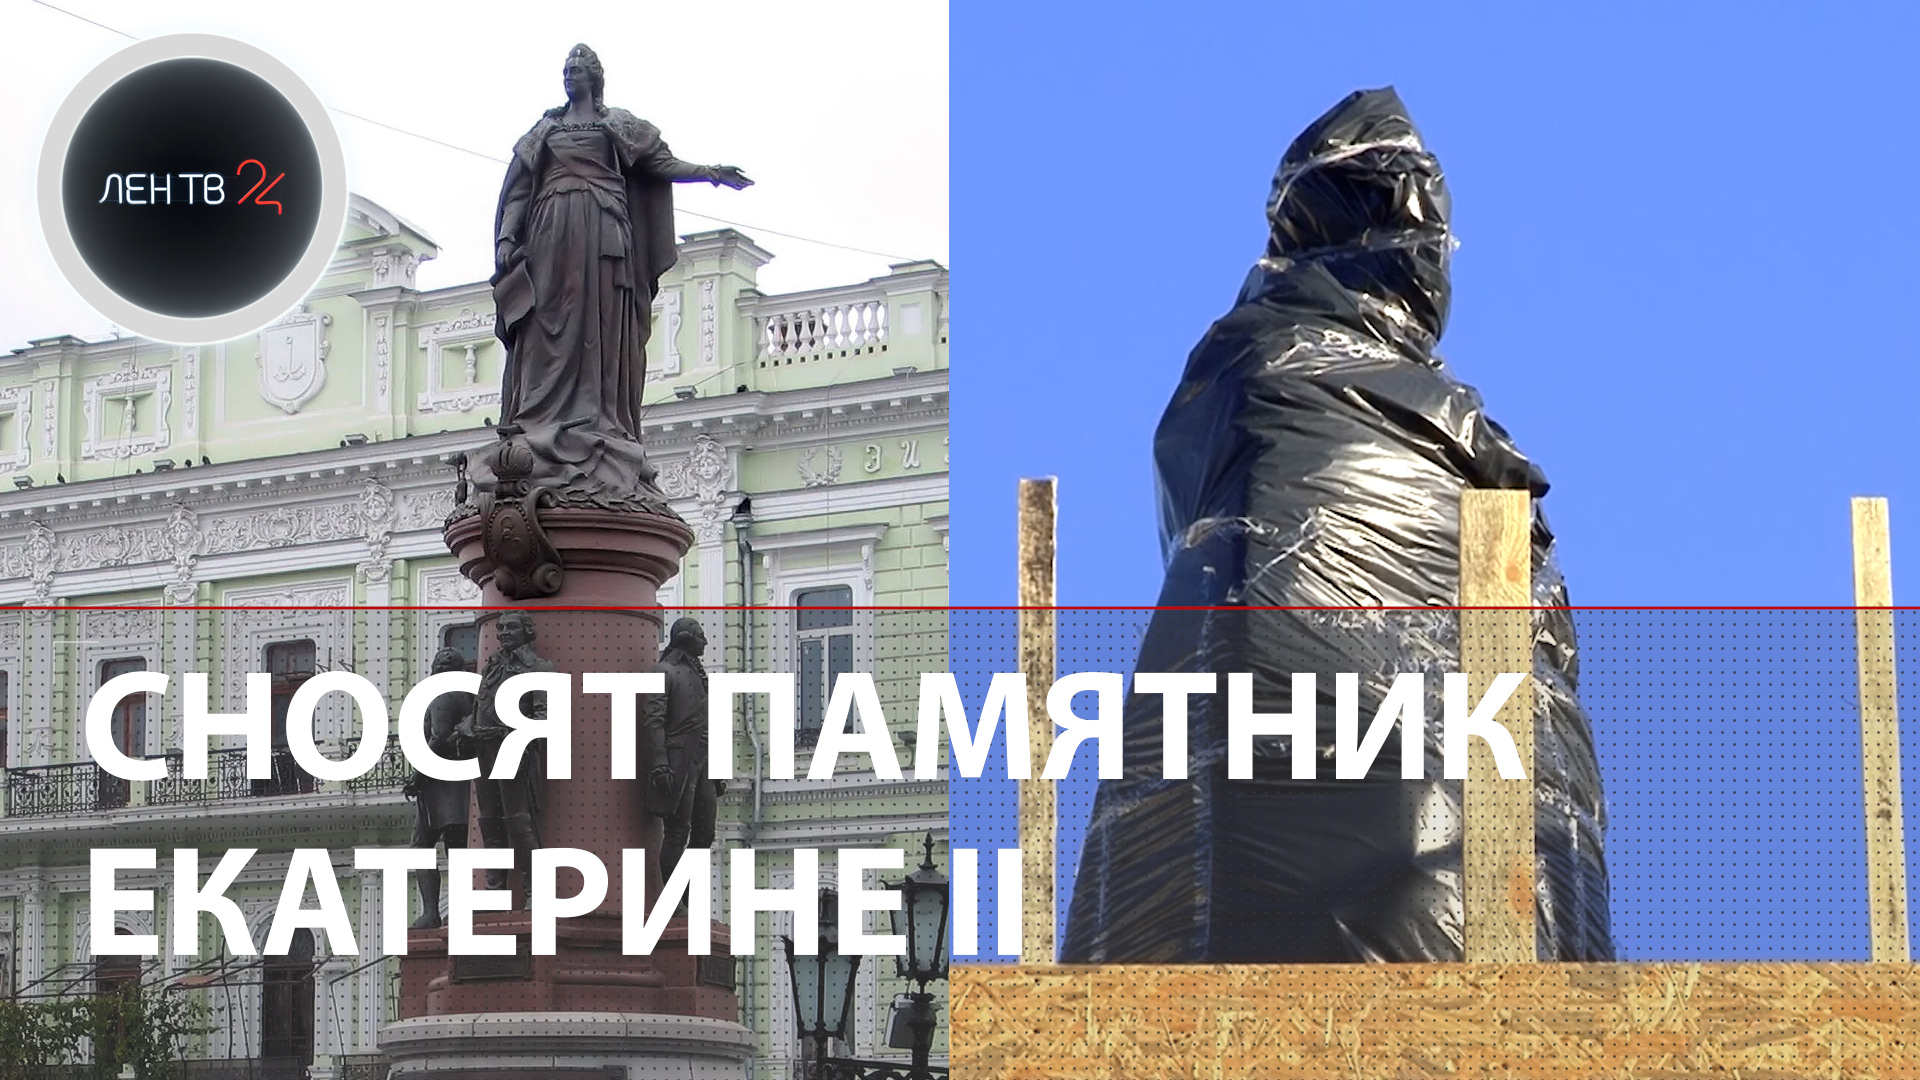 В Одессе сносят памятник Екатерине Великой | Демонтаж монумента основателям города